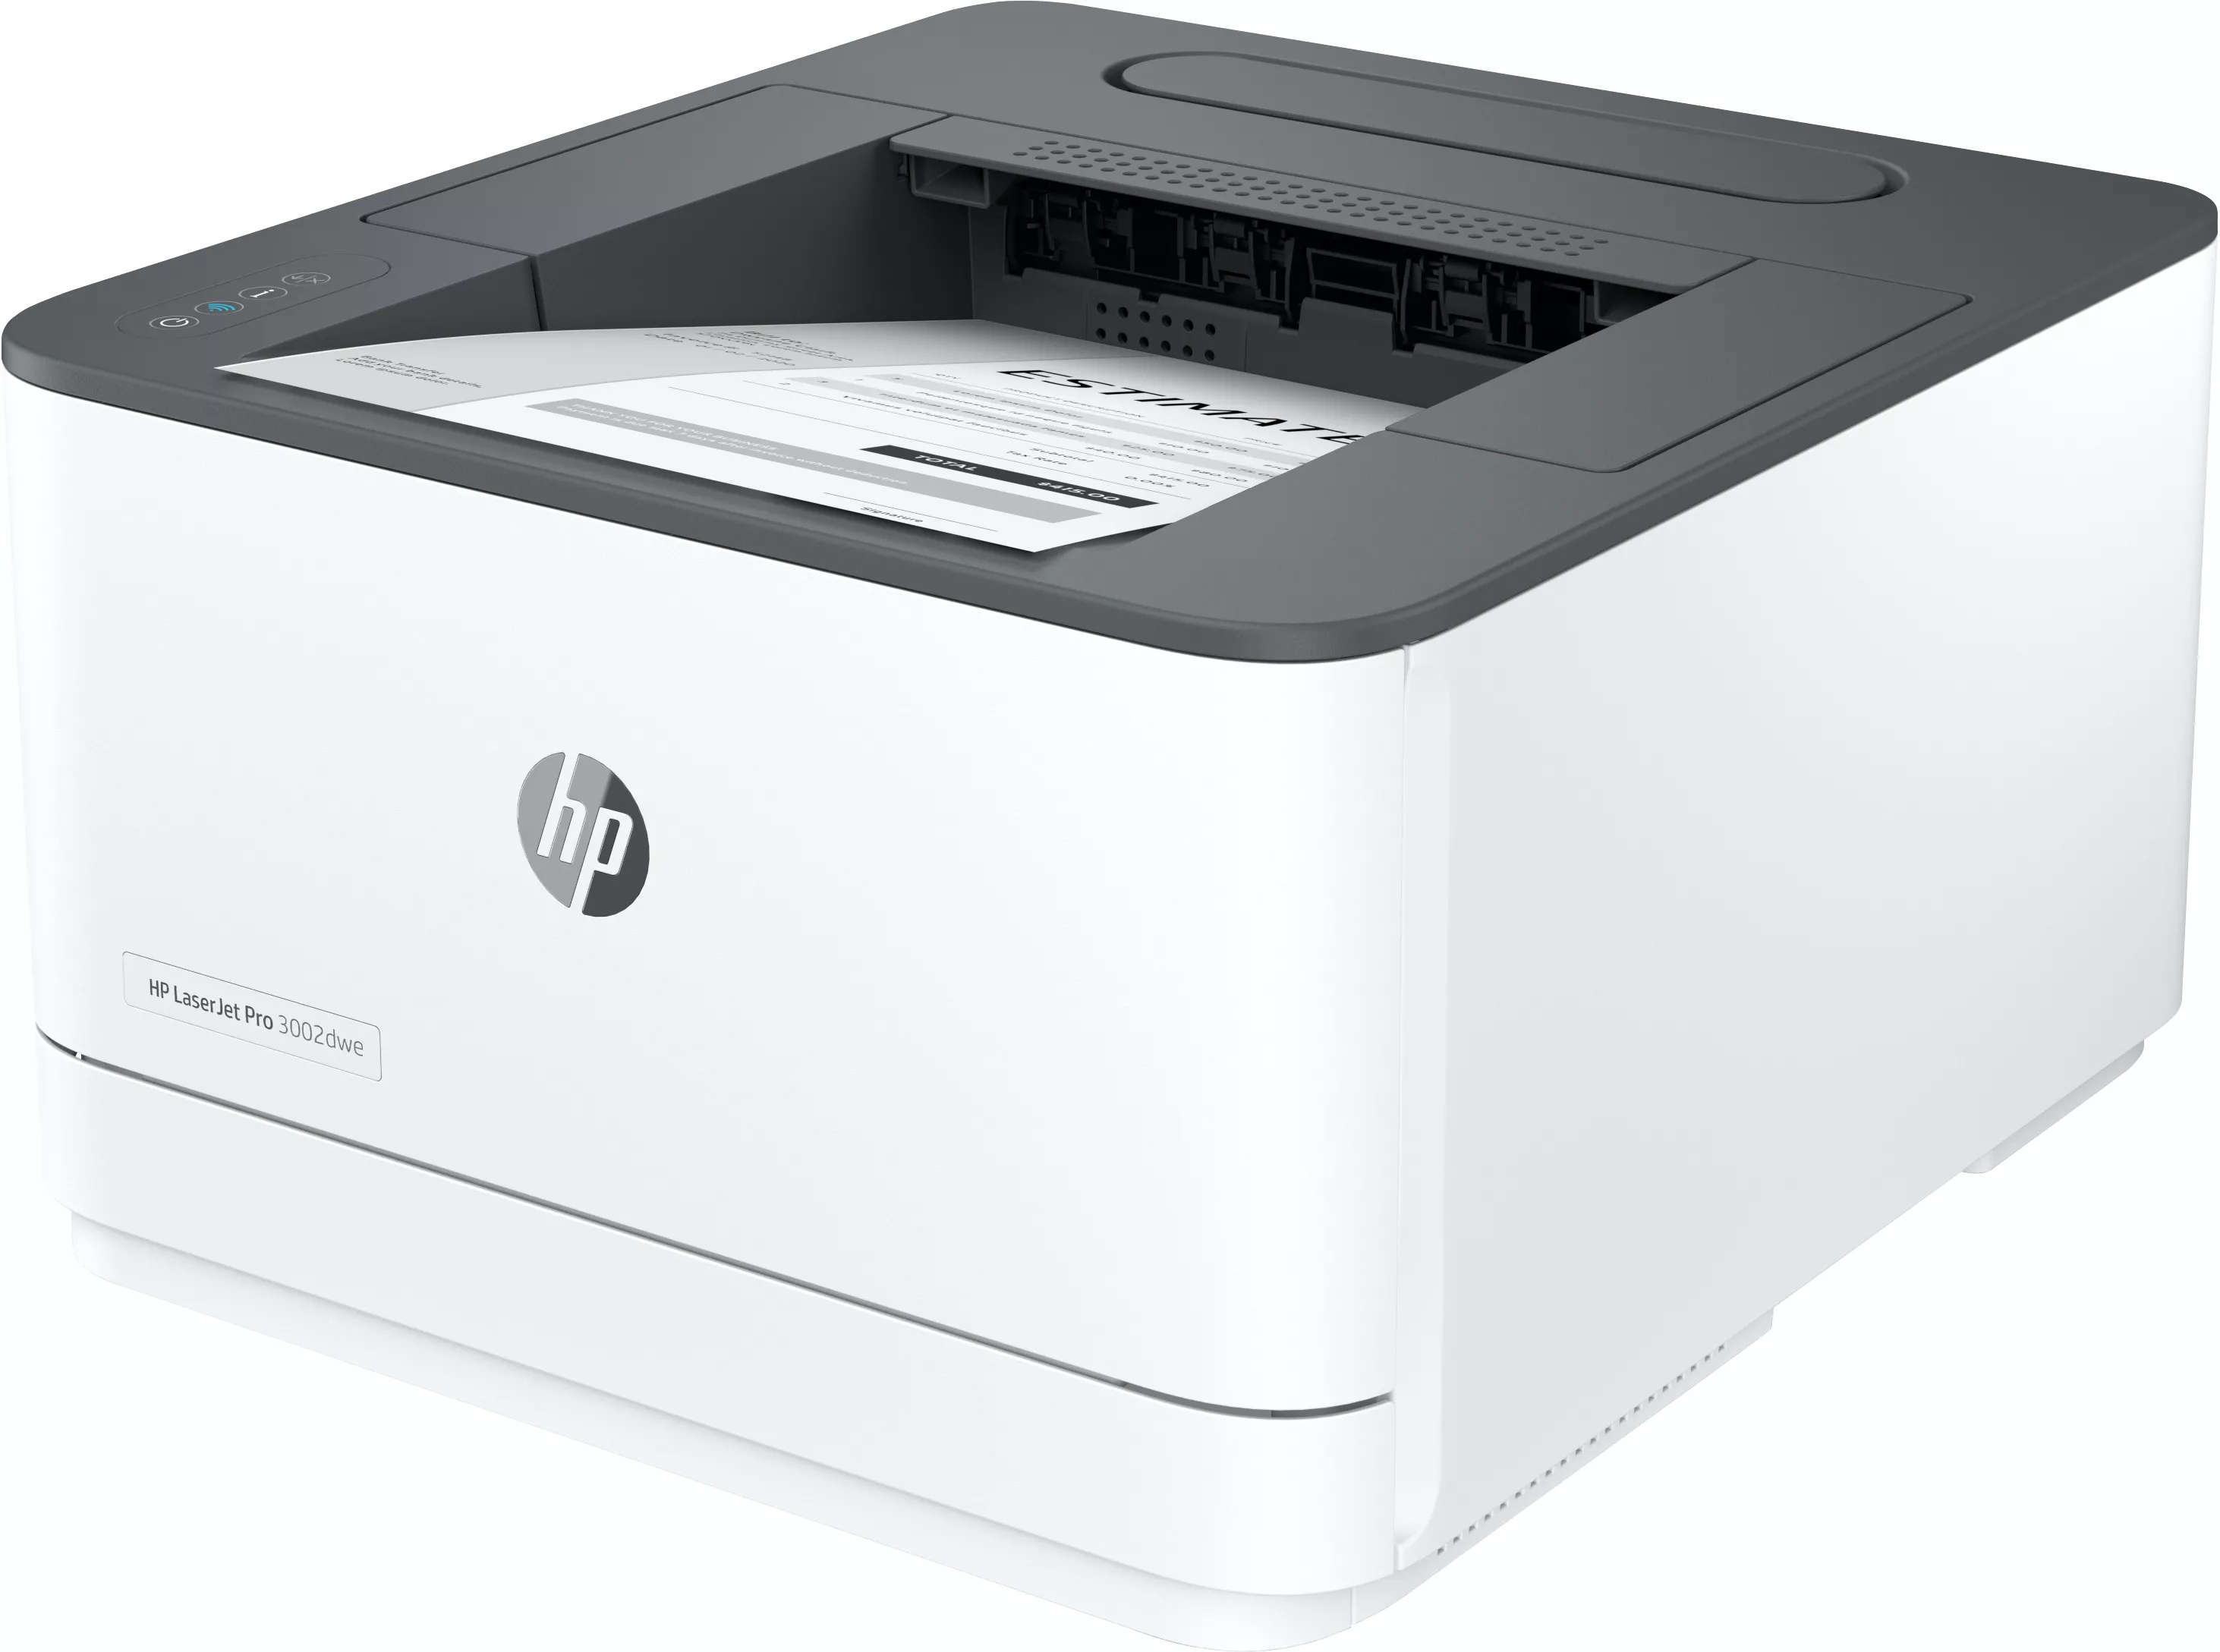 HP LaserJet Pro 3002dwe 33ppm Printer HP - visuel 1 - hello RSE - HP Smart 